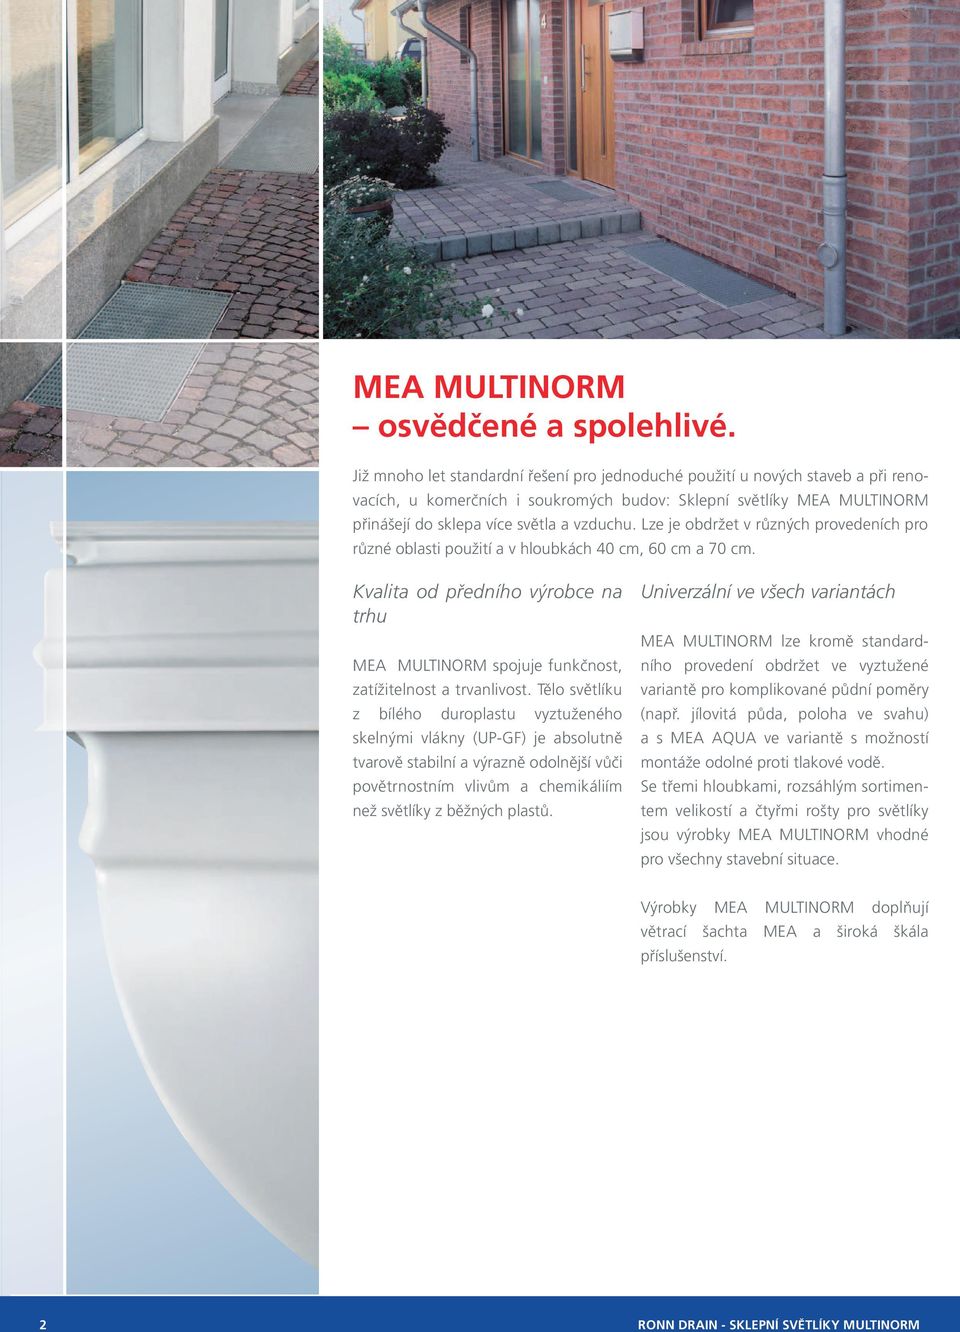 Lze je obdržet v různých provedeních pro různé oblasti použití a v hloubkách 40 cm, 60 cm a 70 cm. Kvalita od předního výrobce na trhu MEA MULTINORM spojuje funkčnost, zatížitelnost a trvanlivost.